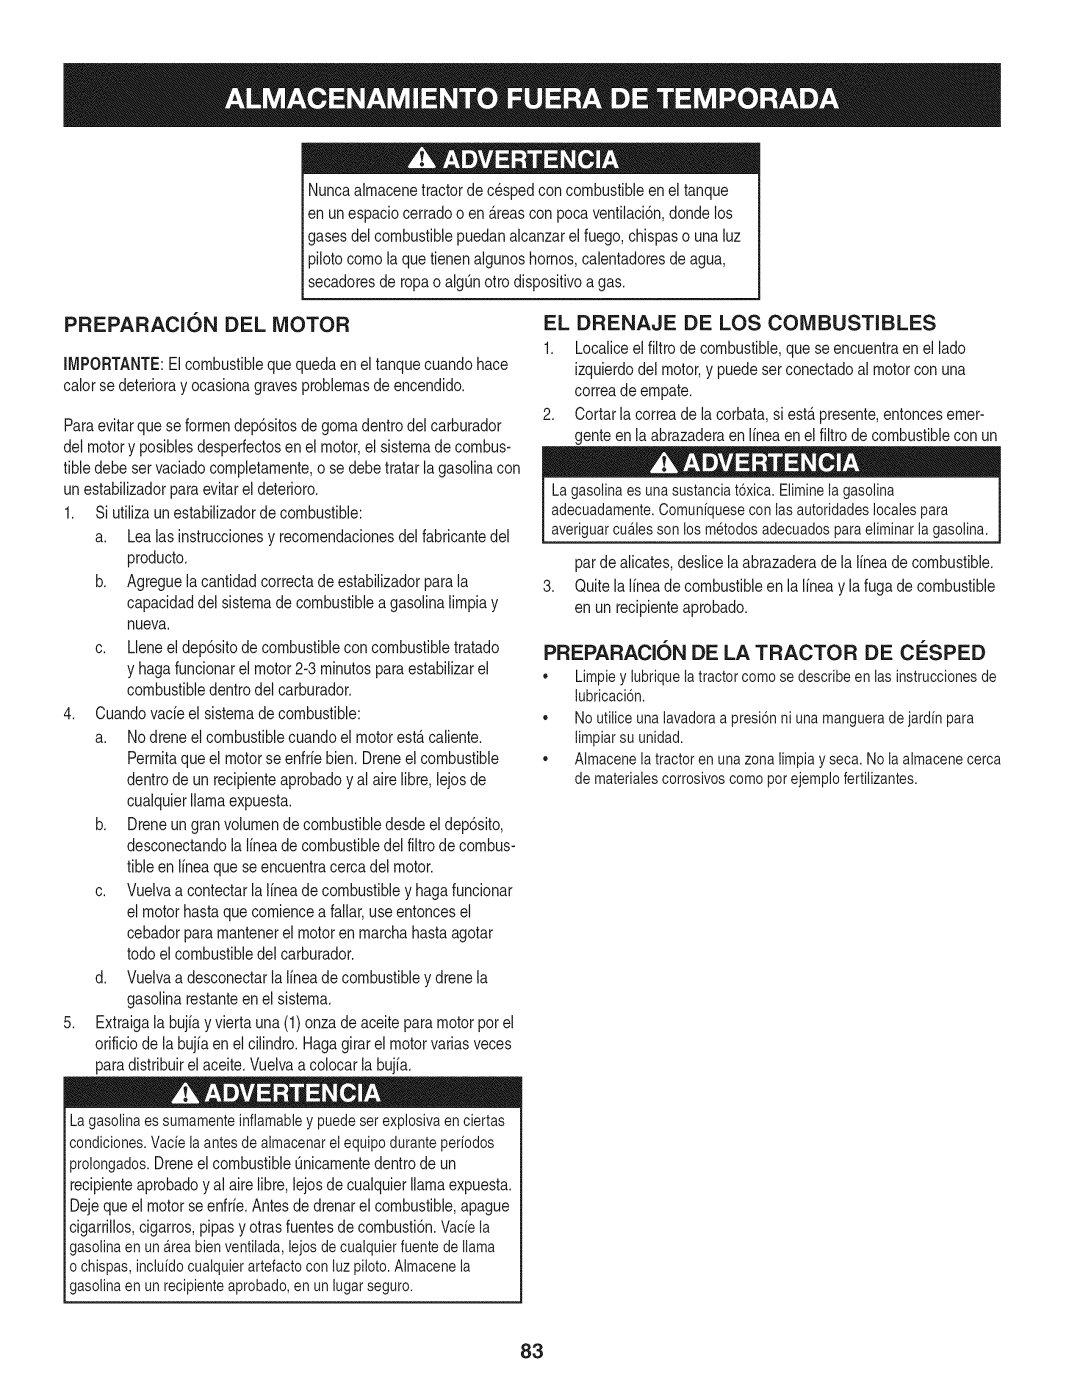 Craftsman 247.28901 manual PREPARACI6N DEL MOTOR, El Drenaje De Los Combustibles, PREPARACI6N DE LA TRACTOR DE CESPED 